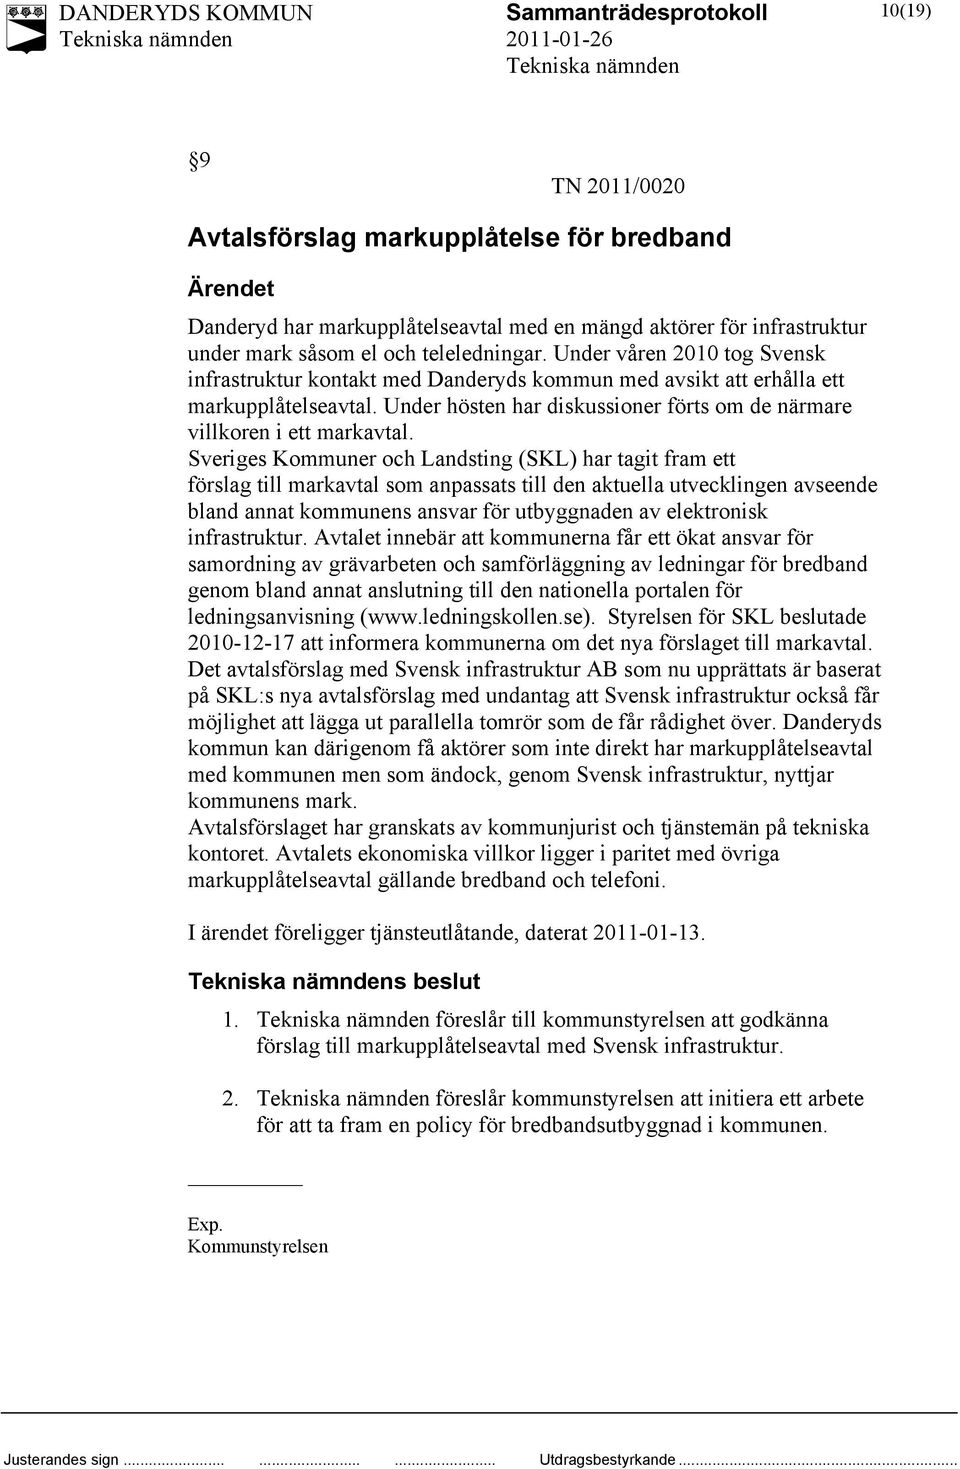 Sveriges Kommuner och Landsting (SKL) har tagit fram ett förslag till markavtal som anpassats till den aktuella utvecklingen avseende bland annat kommunens ansvar för utbyggnaden av elektronisk